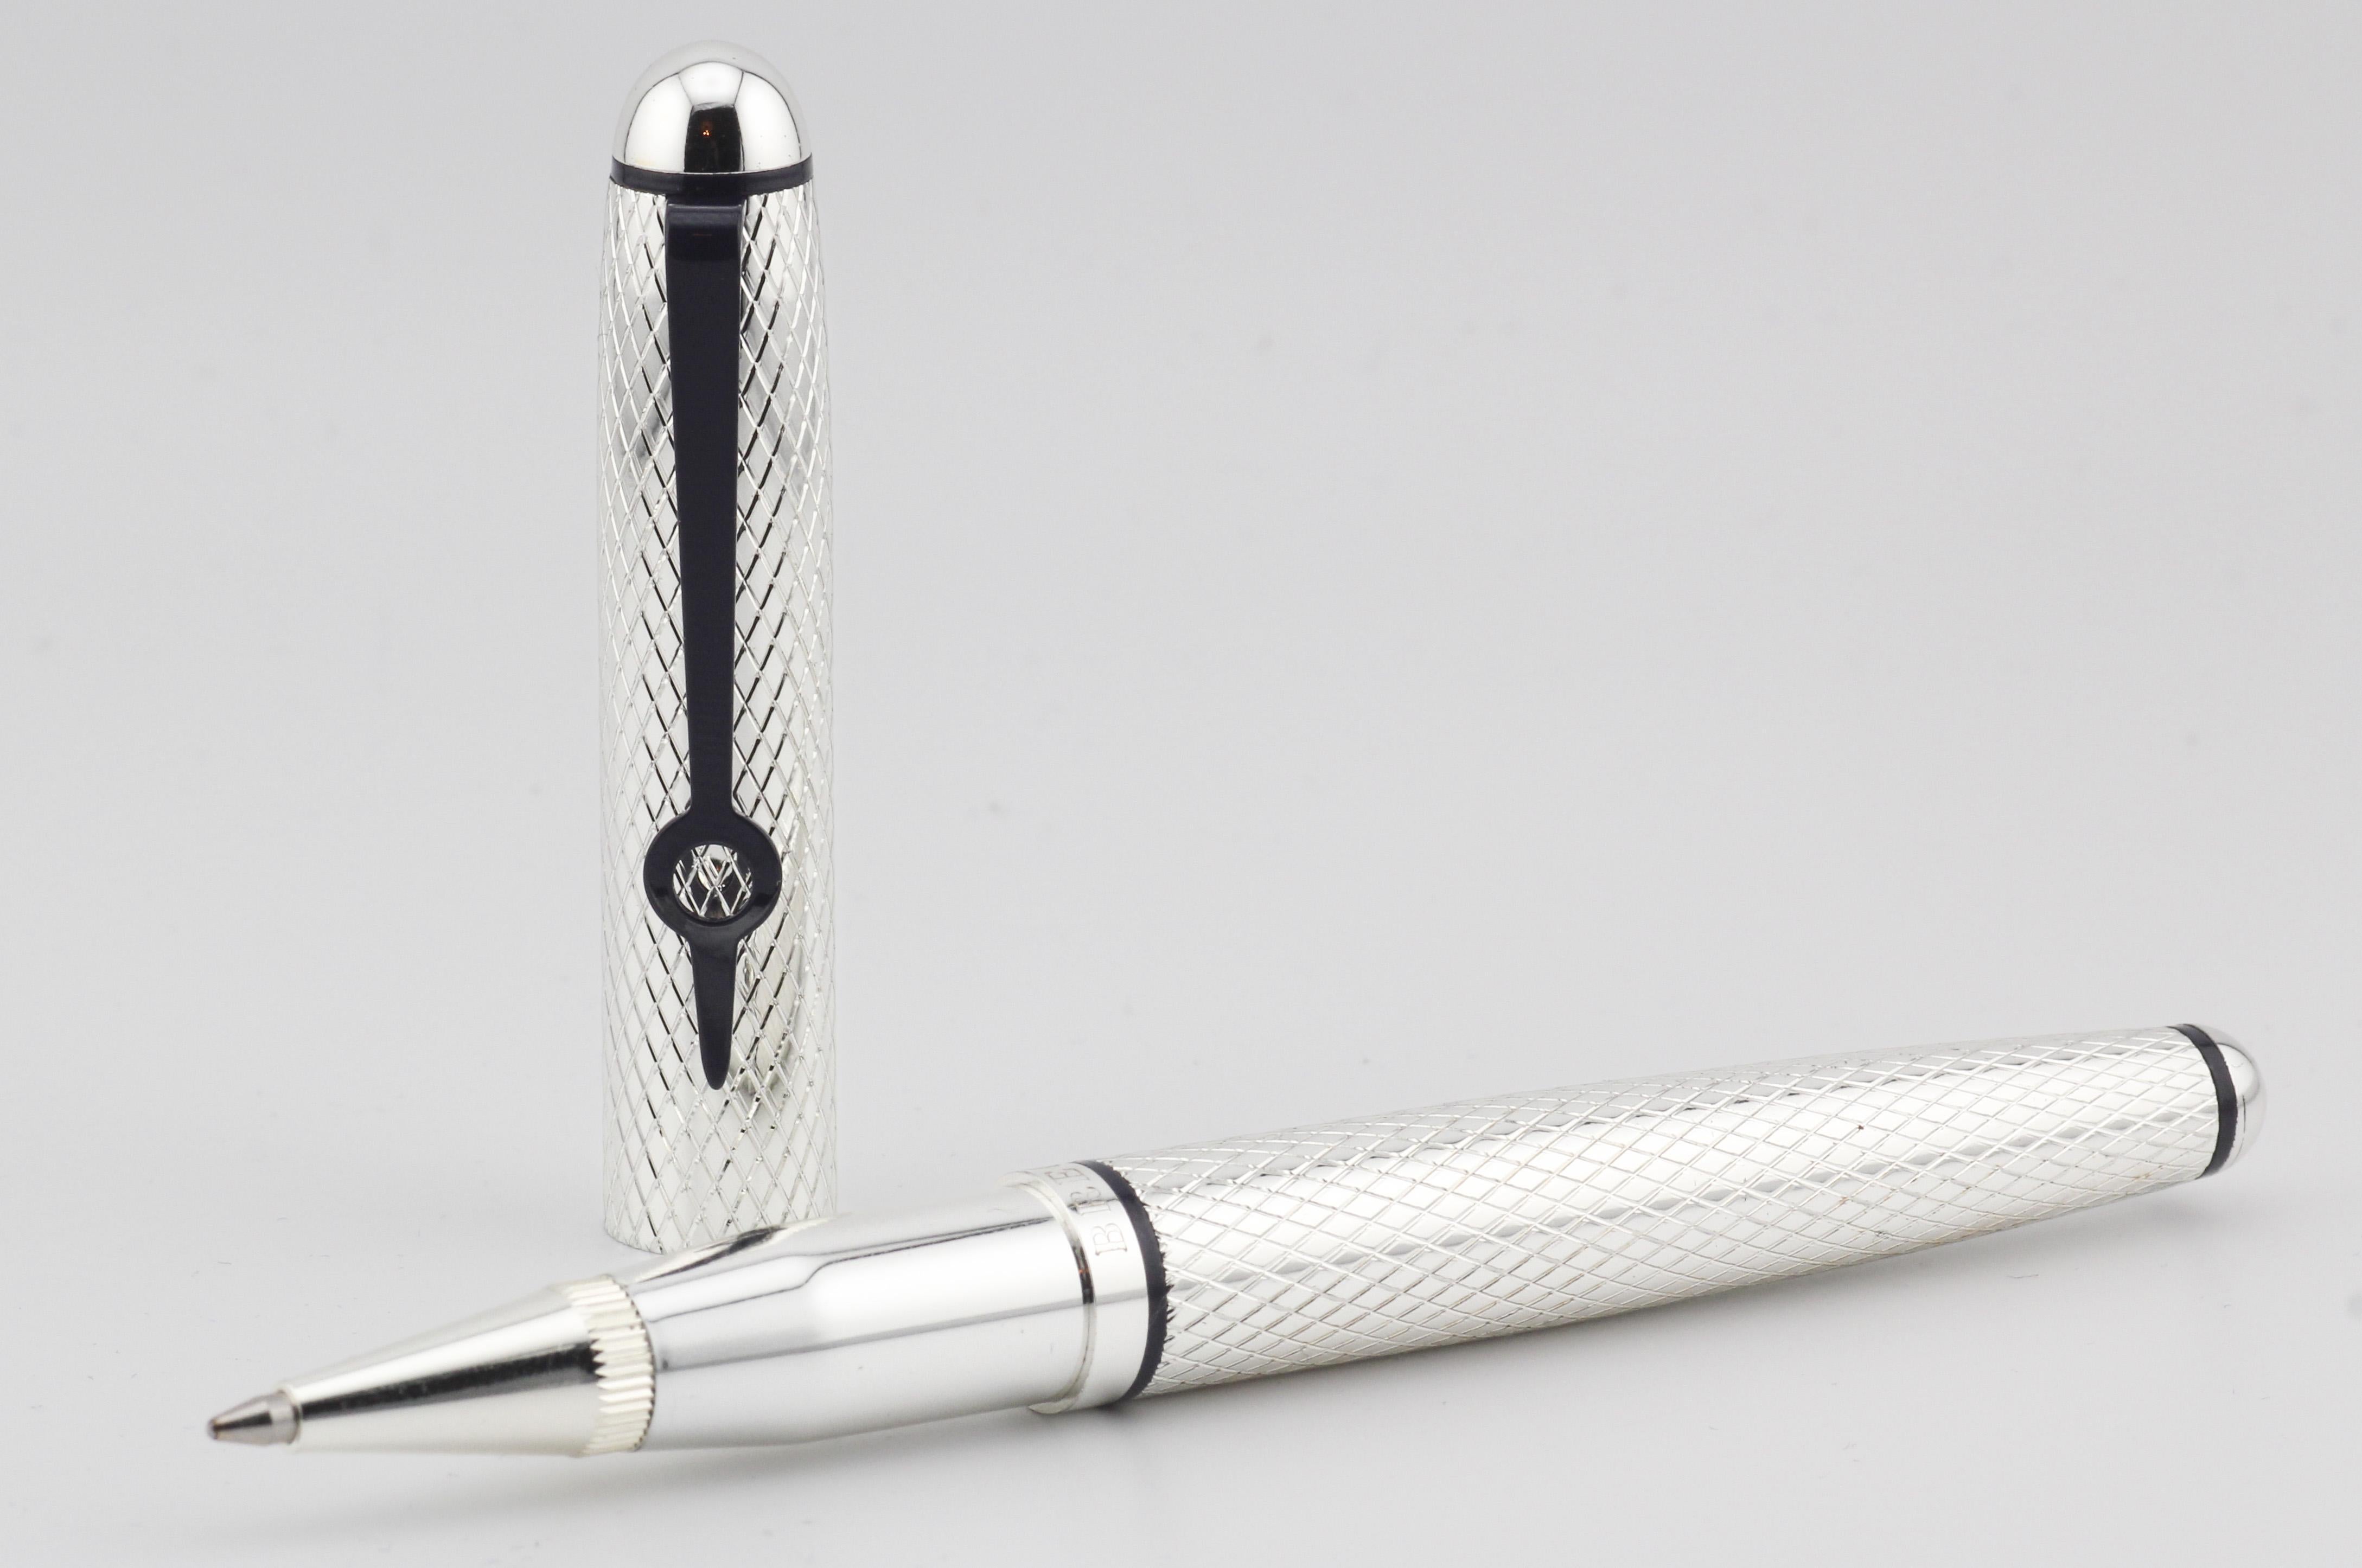 Voici le stylo à bille Breguet Silver, symbole d'un savoir-faire exquis et d'une élégance raffinée. Méticuleusement fabriqué par le célèbre horloger suisse Revere, cet instrument d'écriture incarne le luxe et la sophistication.

Fabriqué en argent